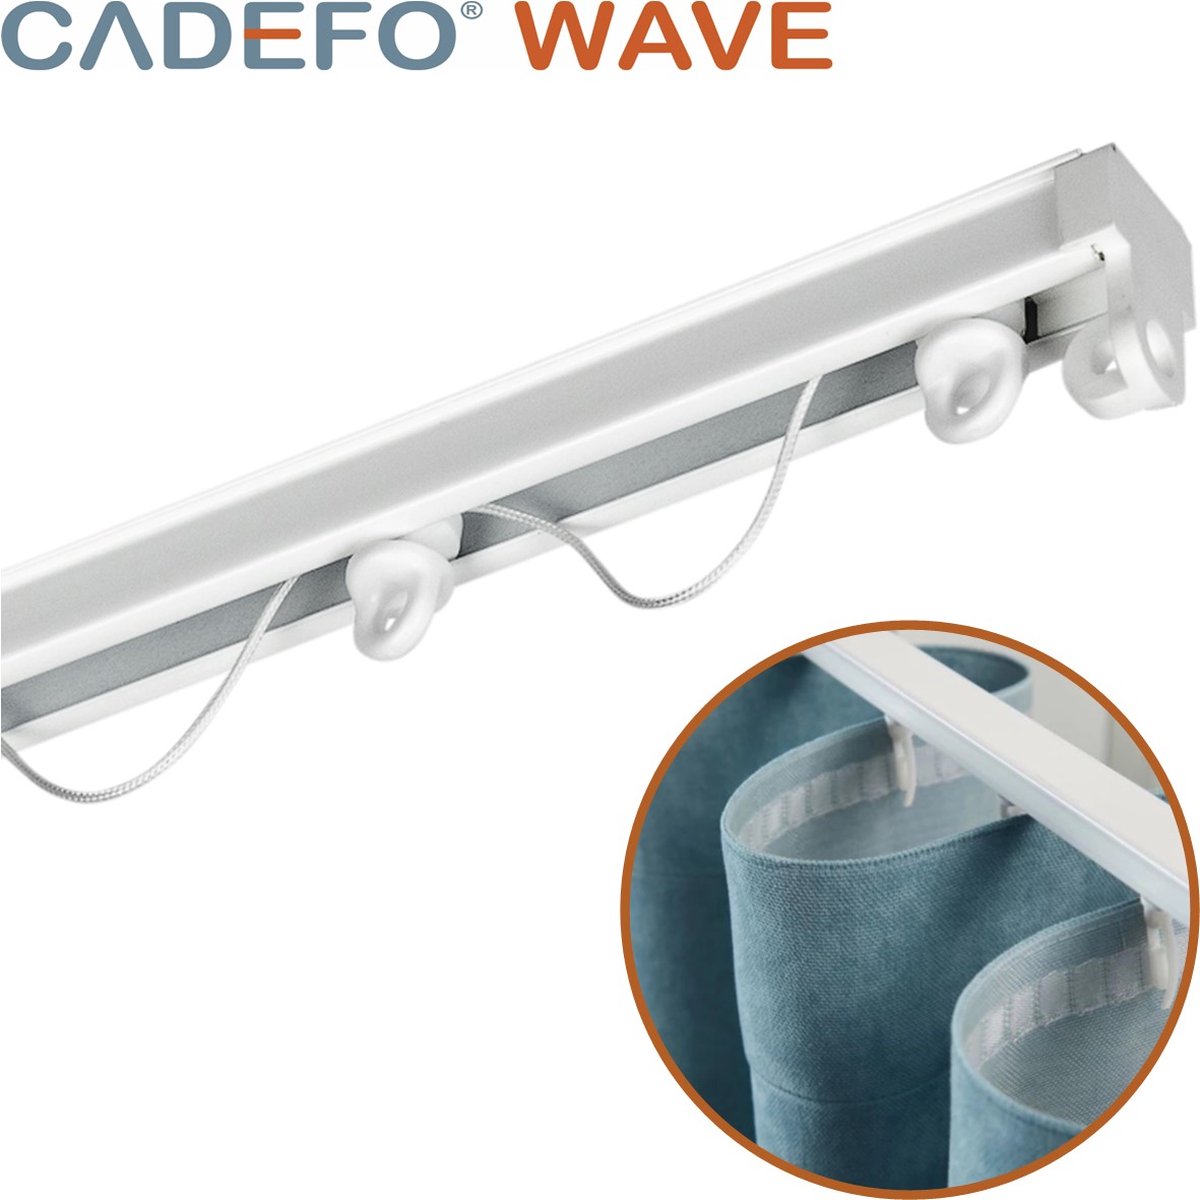 CADEFO WAVE (301 - 350 cm) Gordijnrails - Compleet op maat! - UIT 1 STUK - Leverbaar tot 6 meter - Plafondbevestiging - Lengte 335 cm